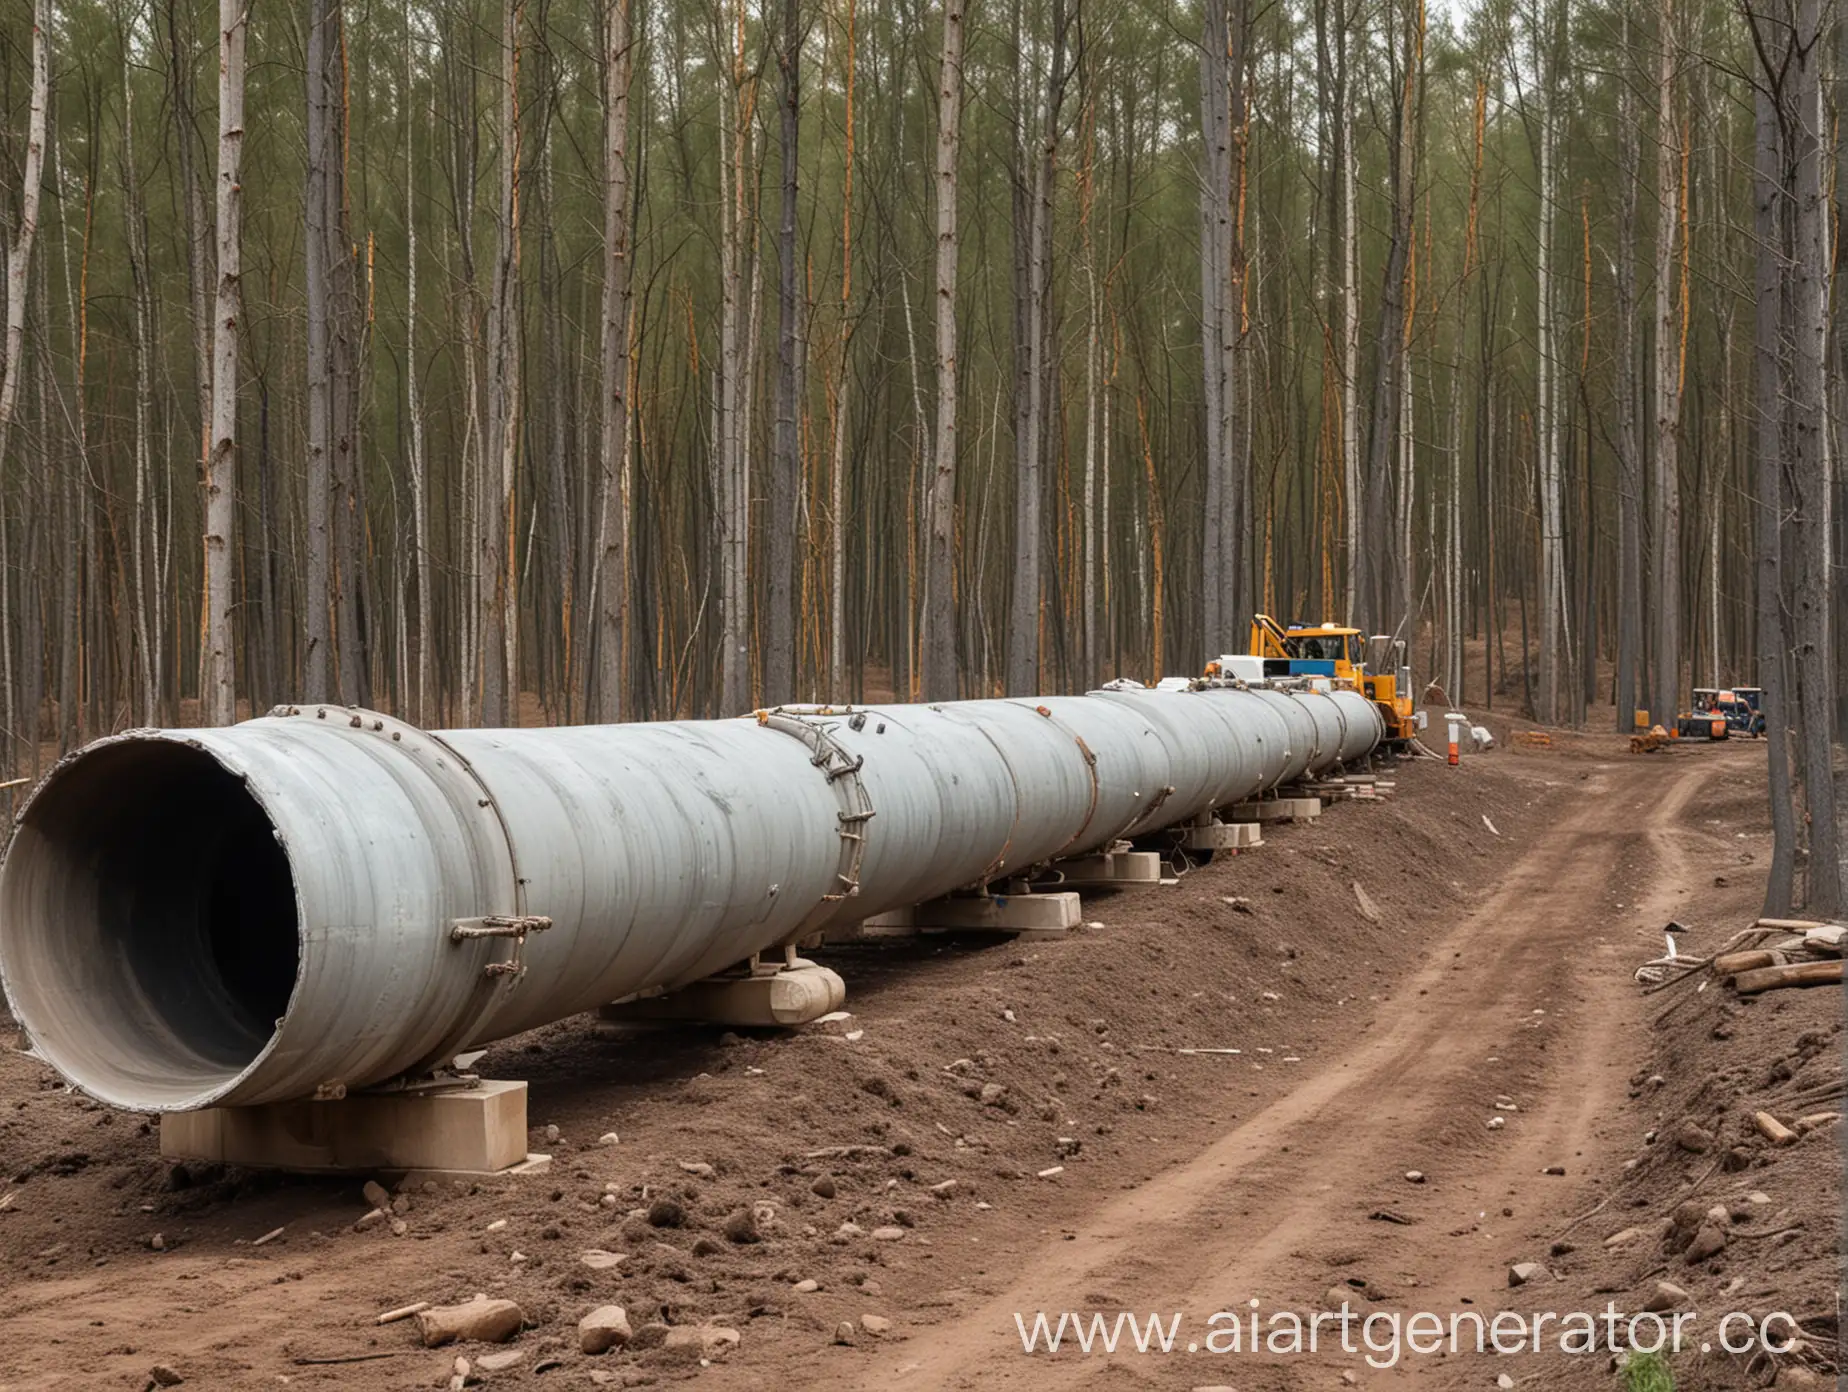 строительство газонефтепровода техникой в лесу
